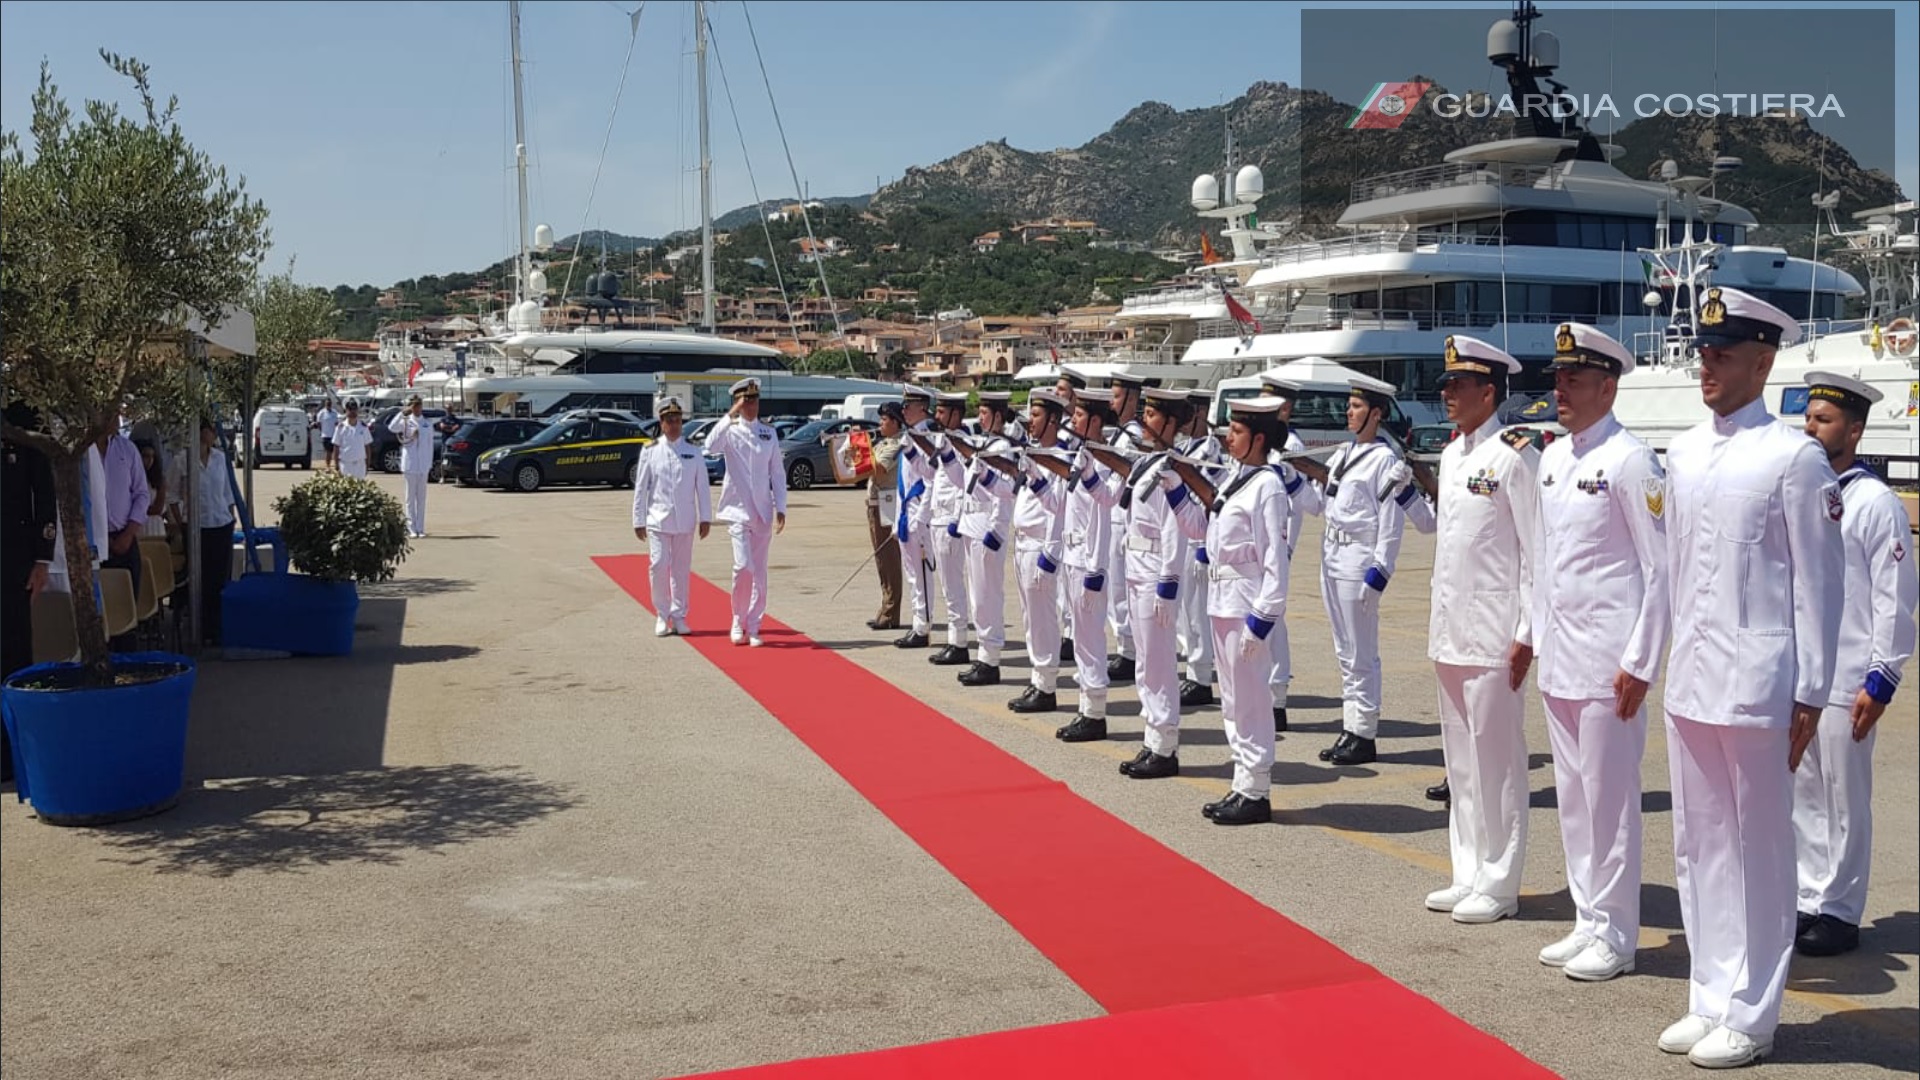 Guardia Costiera: l'ammiraglio Pettorino incontra i militari galluresi